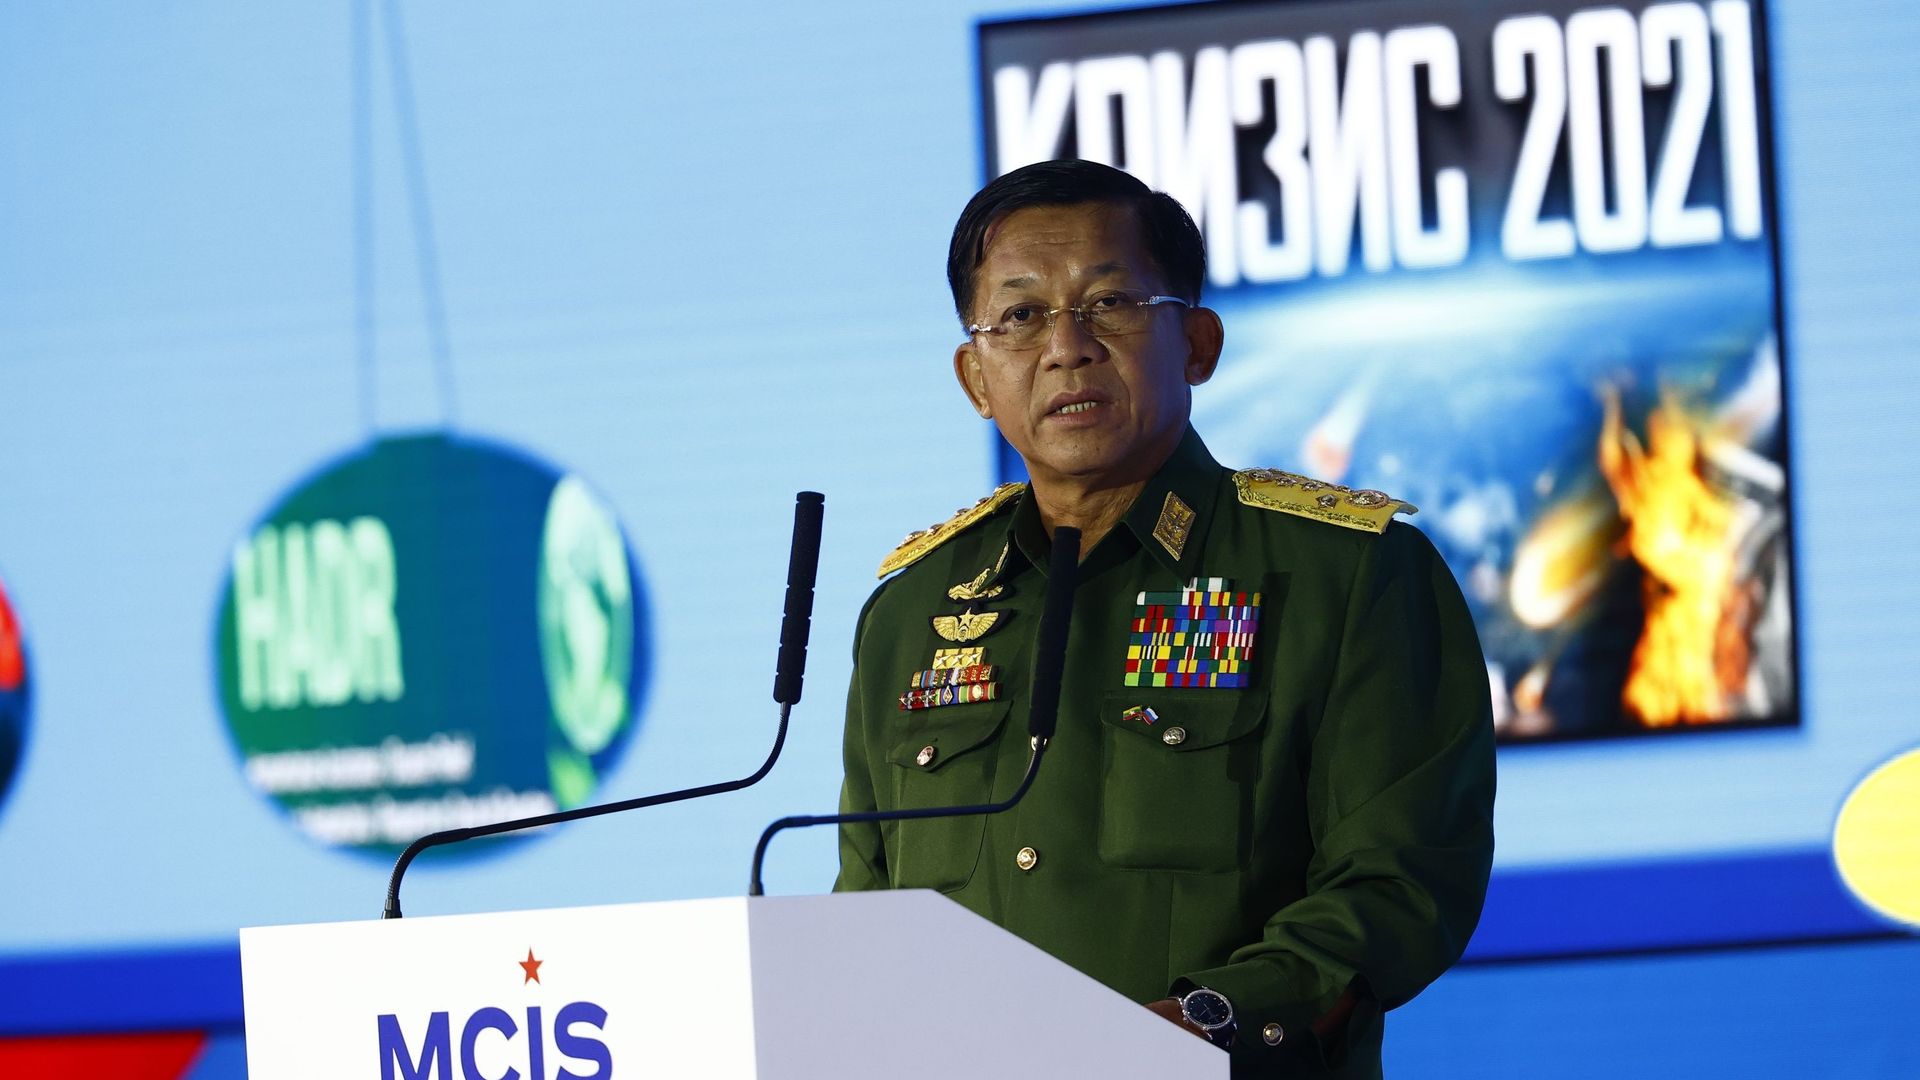 Le chef du régime putschiste du Myanmar, le général Min Aung Hlaing, prend la parole lors de la 9e Conférence de Moscou sur la sécurité internationale à Moscou, en Russie, le 23 juin 2021.